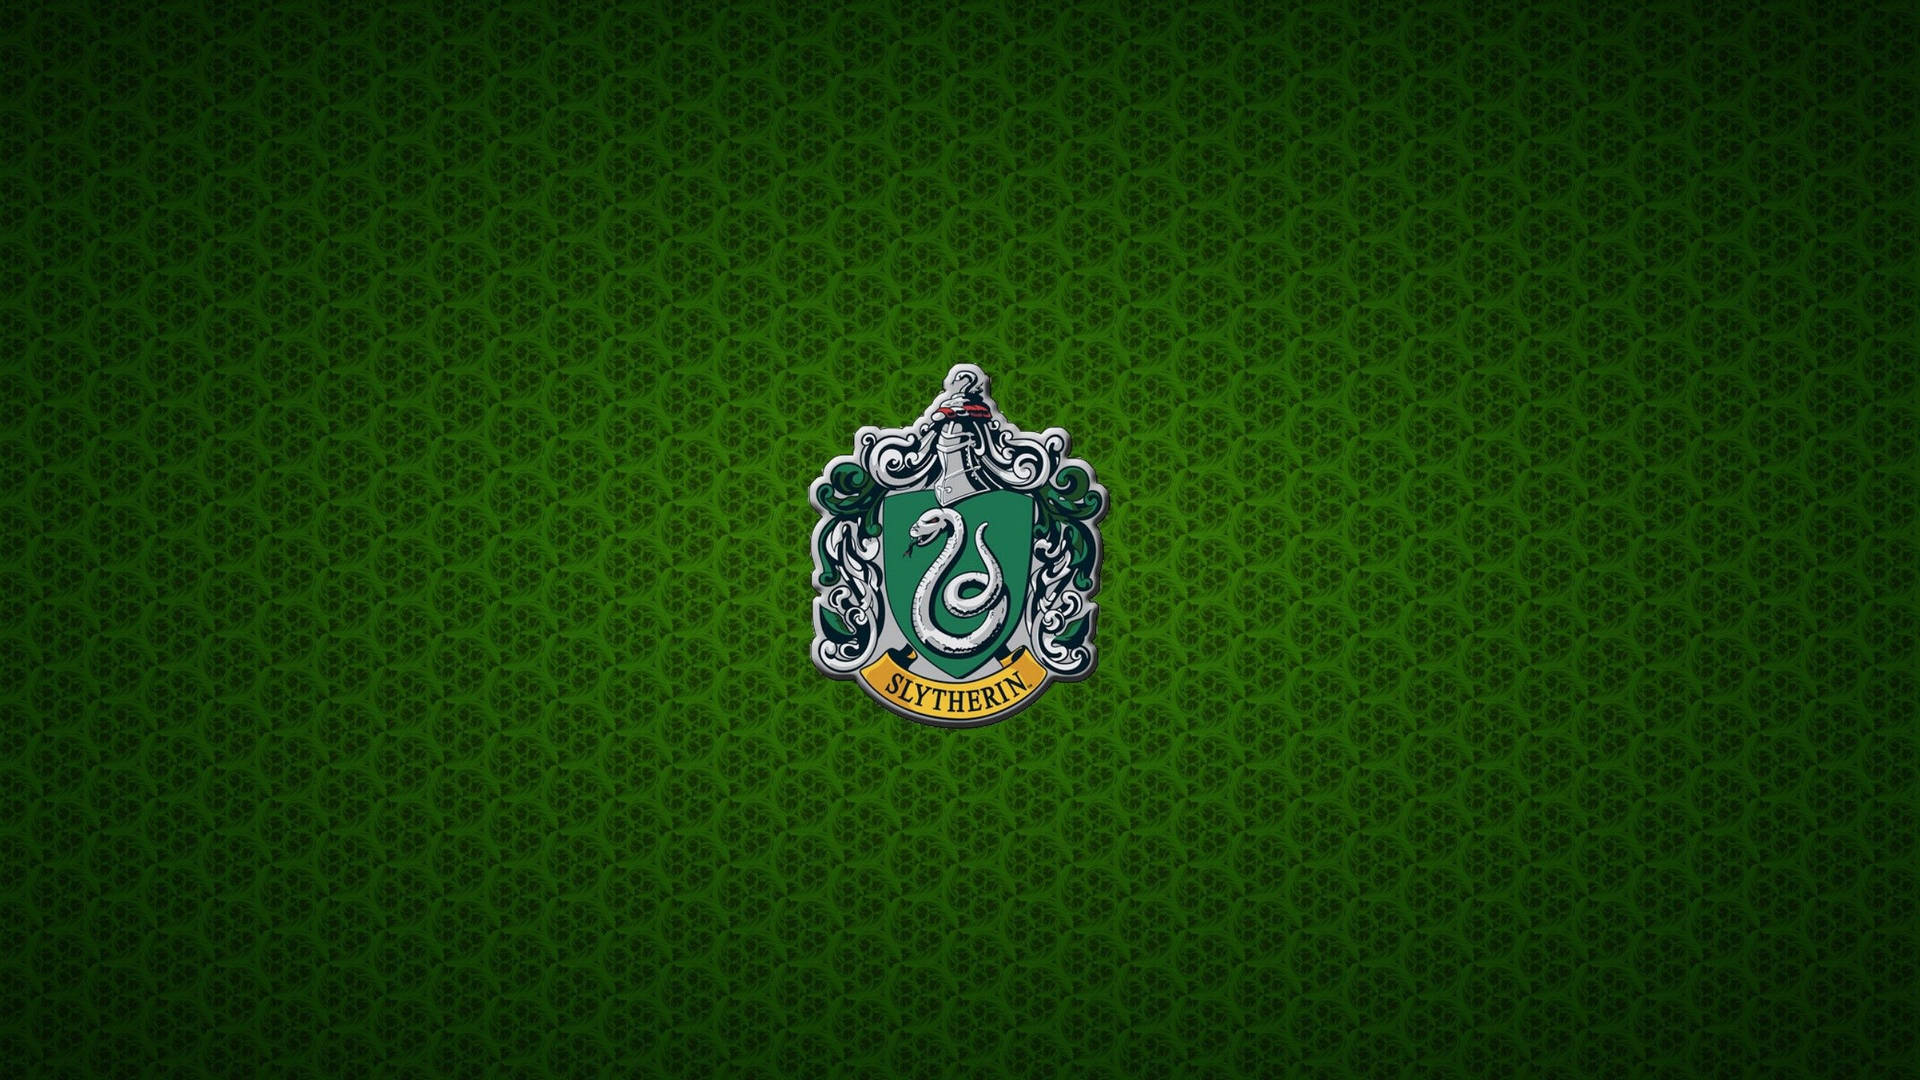 Slytherin Crest Green Knit